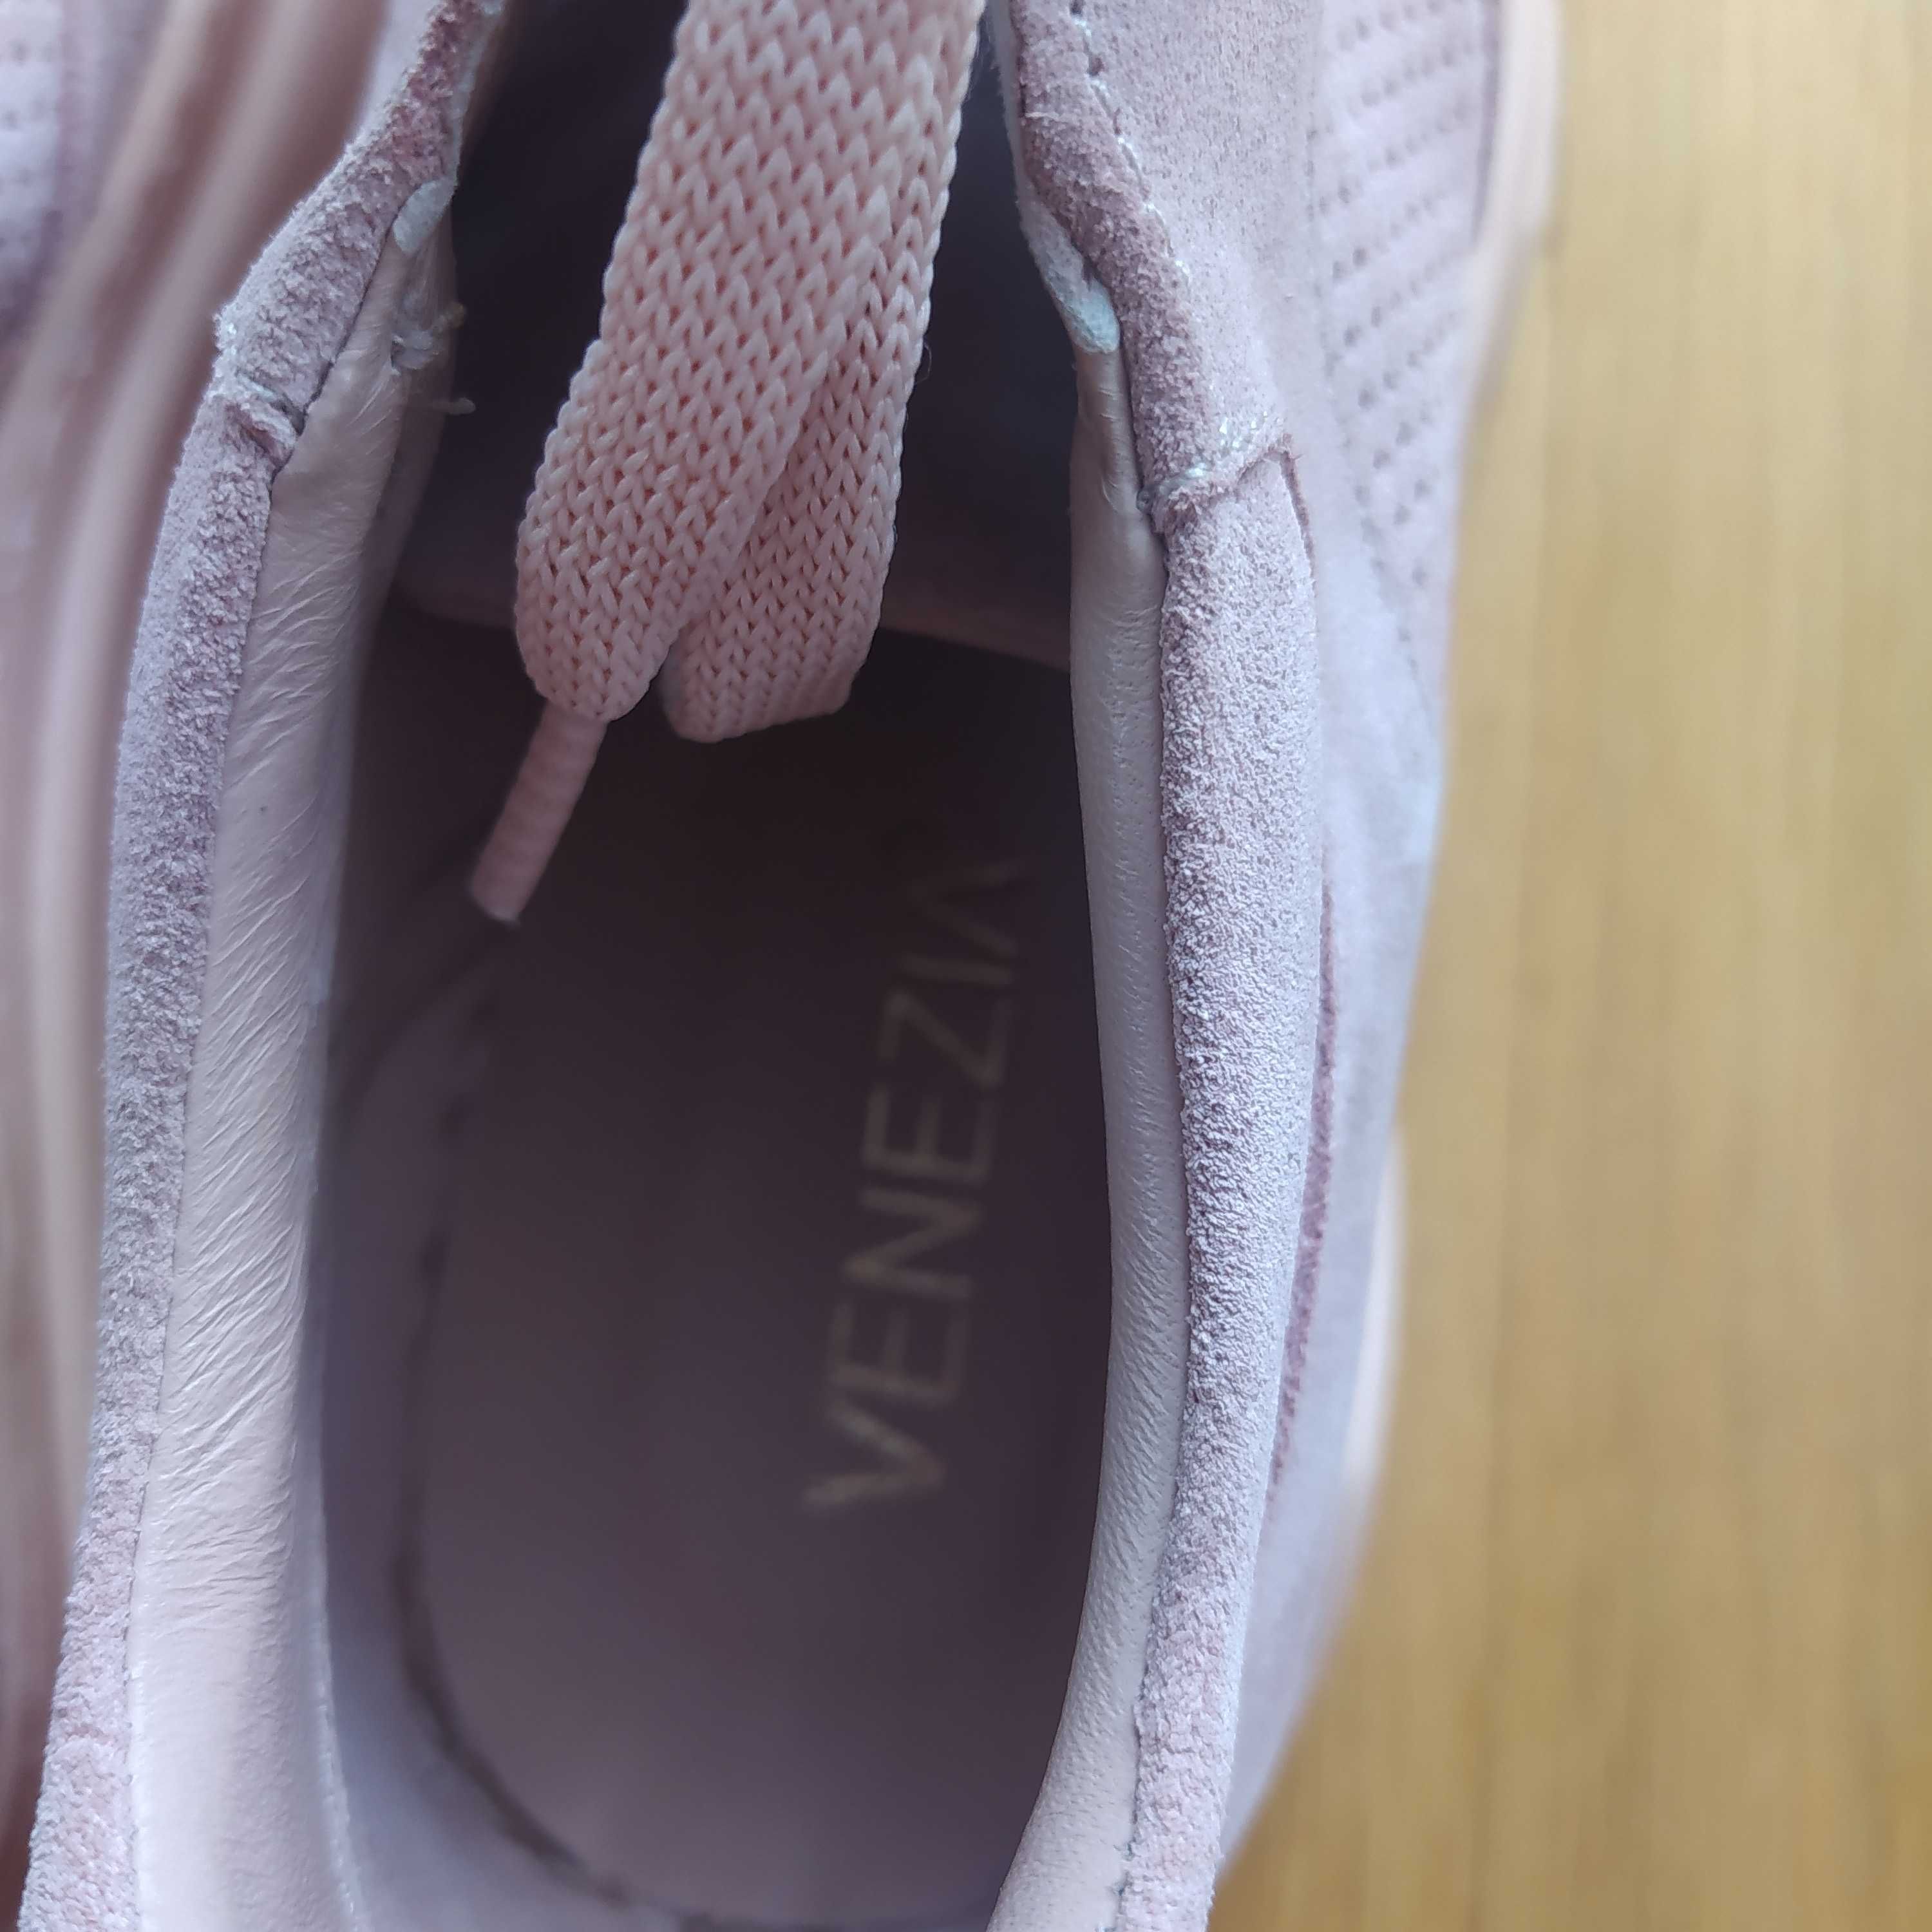 Buty sneakersy zamszowe różowe Venezia r. 37